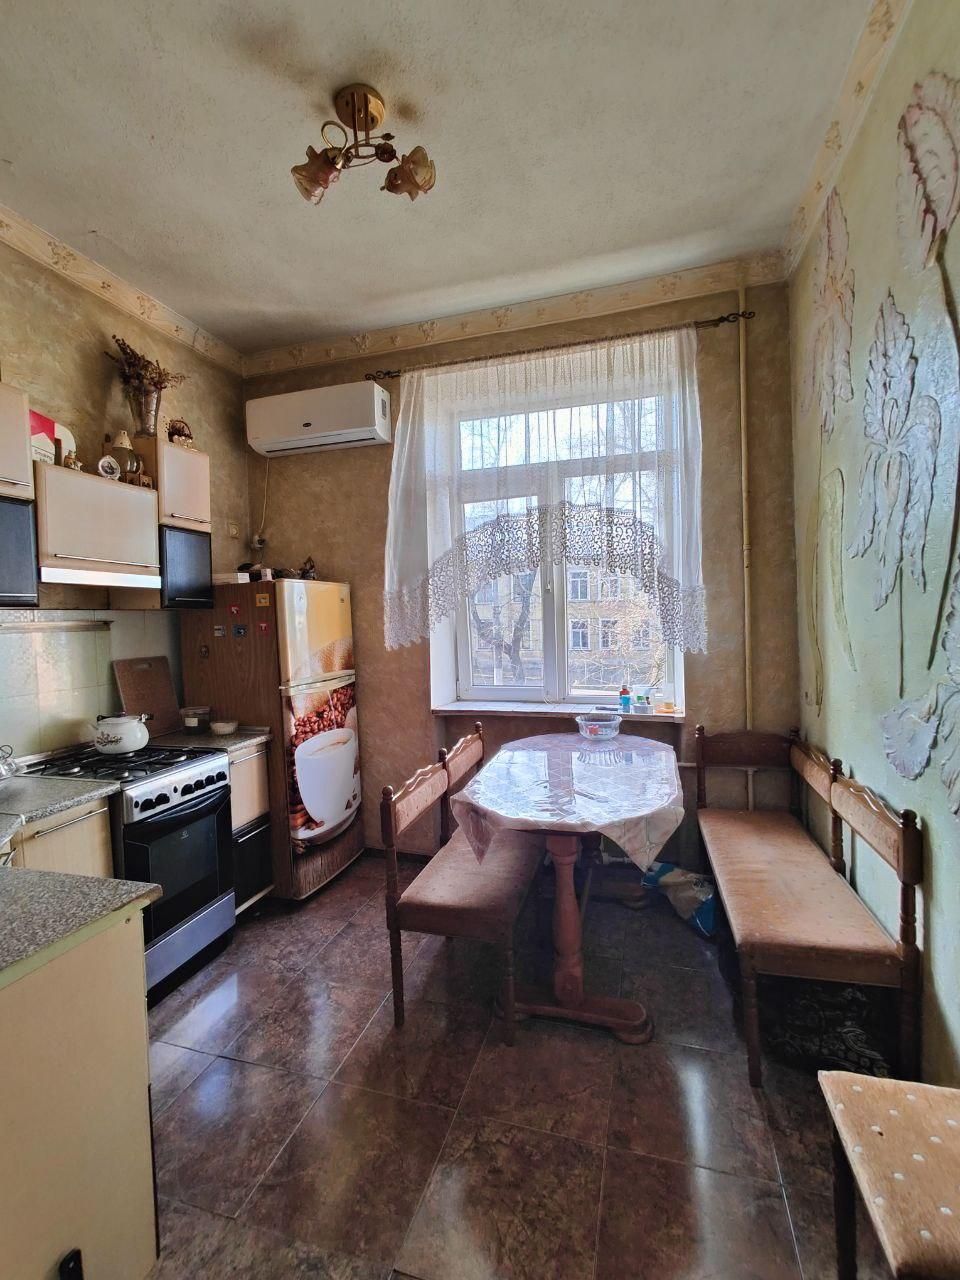 Подам 2-ком квартиру в сталинке на ул.Фабричной (2-822-015)